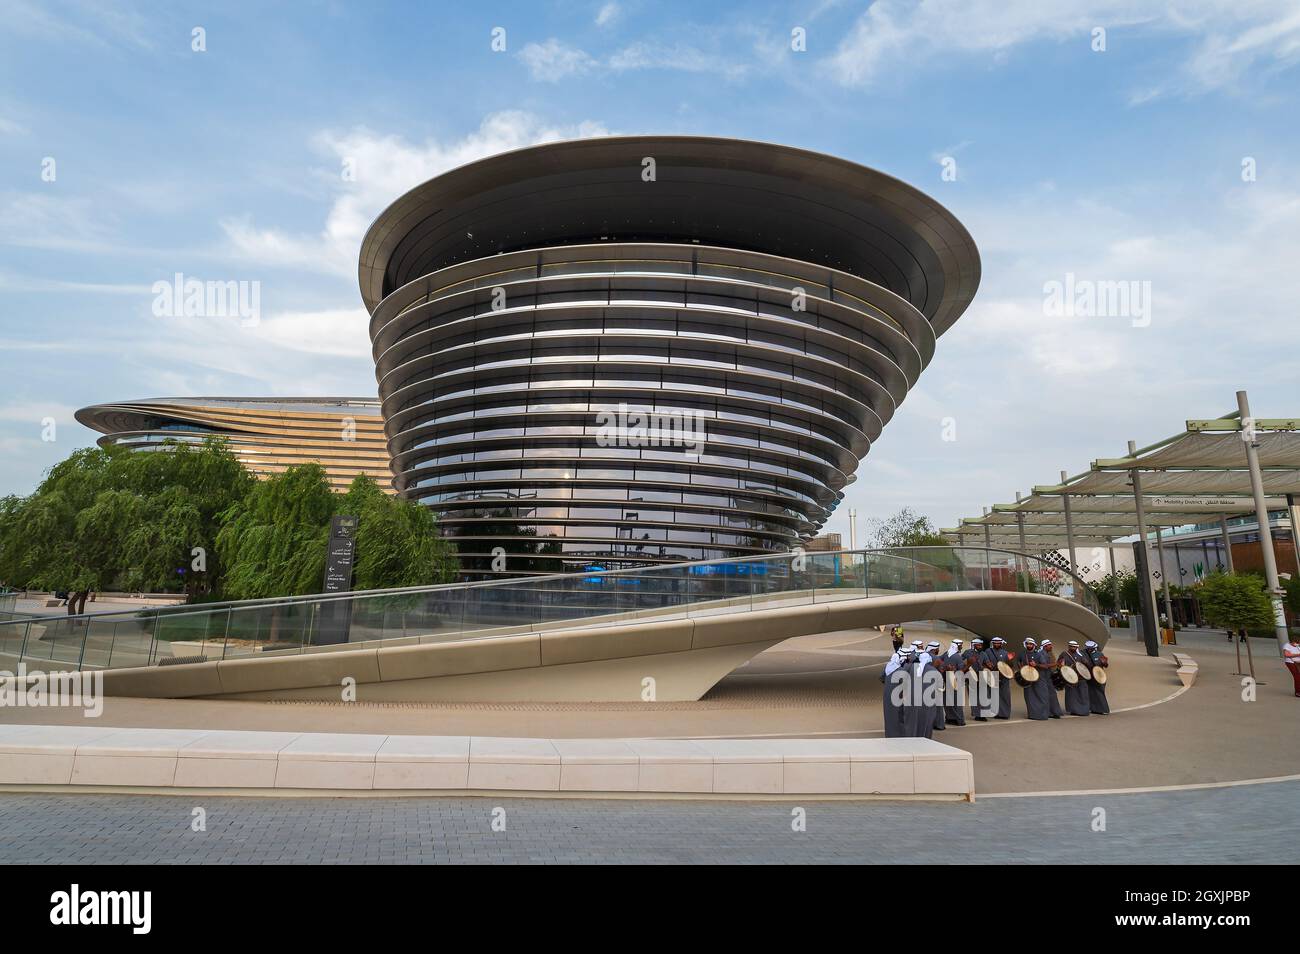 Dubai, Vereinigte Arabische Emirate - 3. Oktober 2020: Alif, The Mobility Pavilion auf der Dubai EXPO 2020 mit einzigartiger Architektur und einzigartigem Design in den Vereinigten Arabischen Emiraten Stockfoto